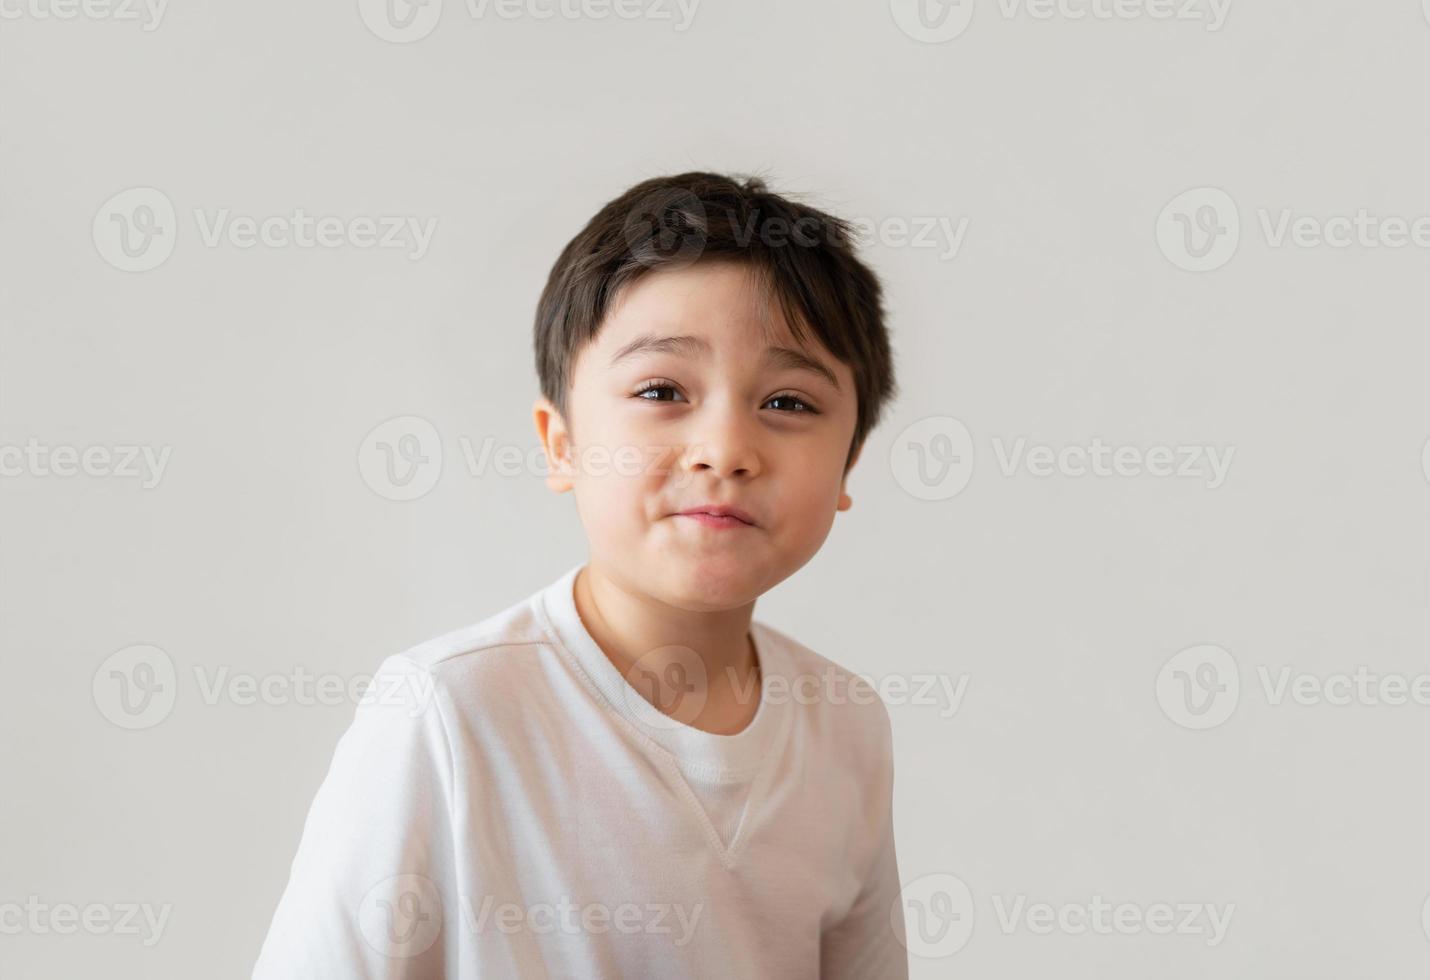 retrato lindo niño feliz con camiseta blanca mirando hacia arriba con cara sorprendida, tiro en la cabeza niño positivo con cara sonriente y haciendo cara graciosa. concepto de días de niños foto